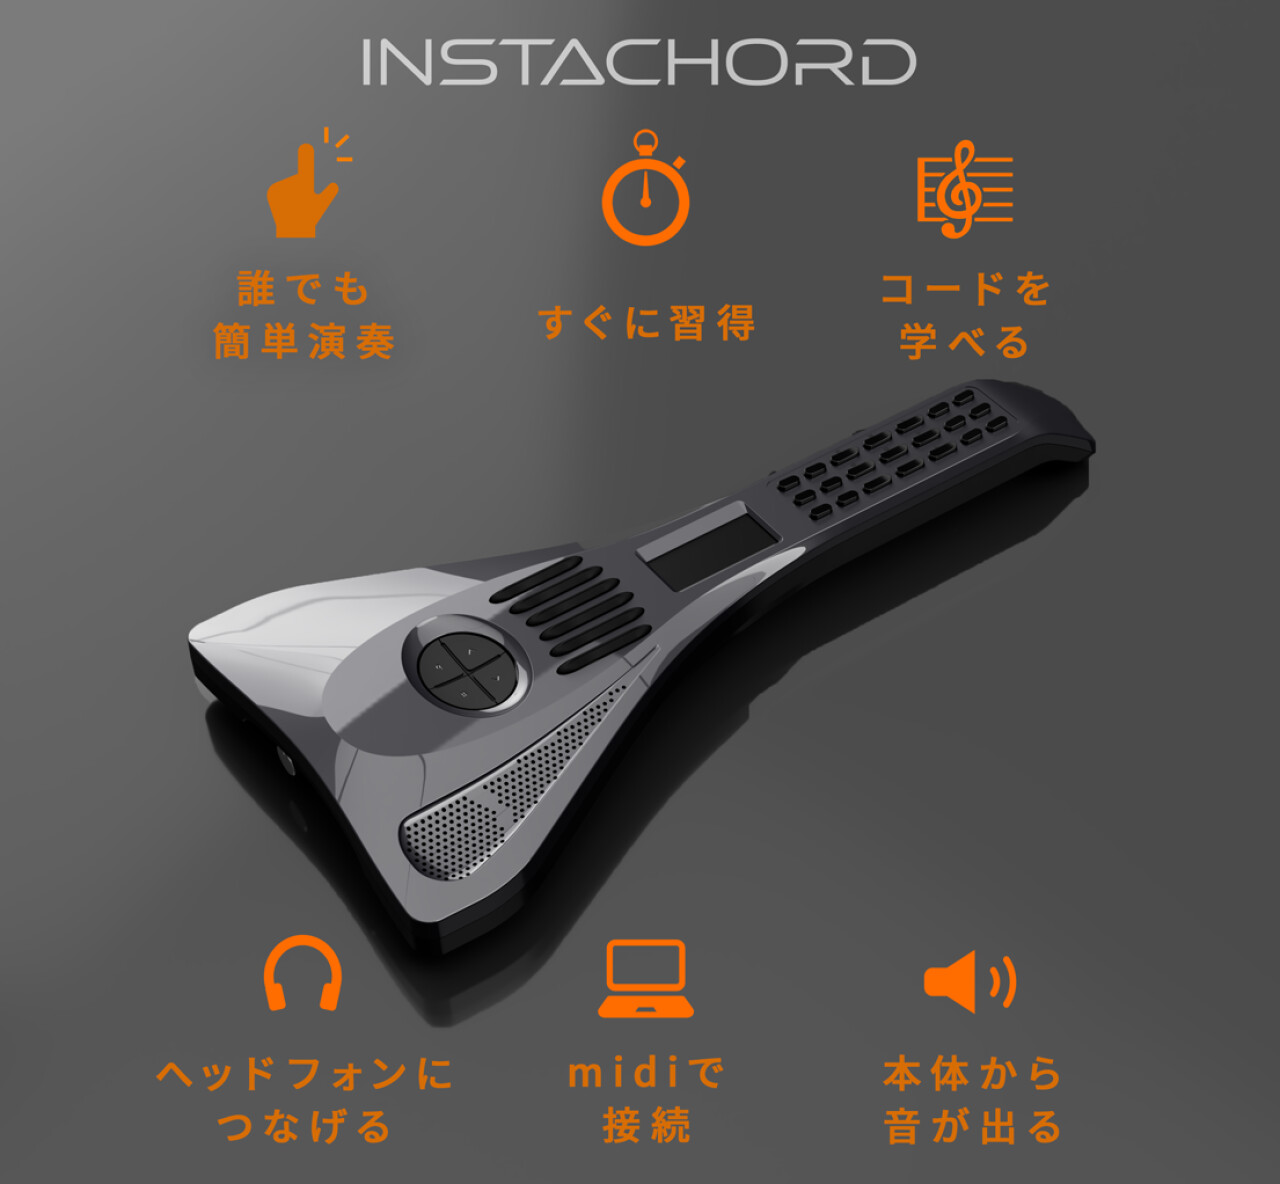 インスタコード-InstaChord-IC30-ｸﾞﾚｰﾒﾀﾘｯｸ